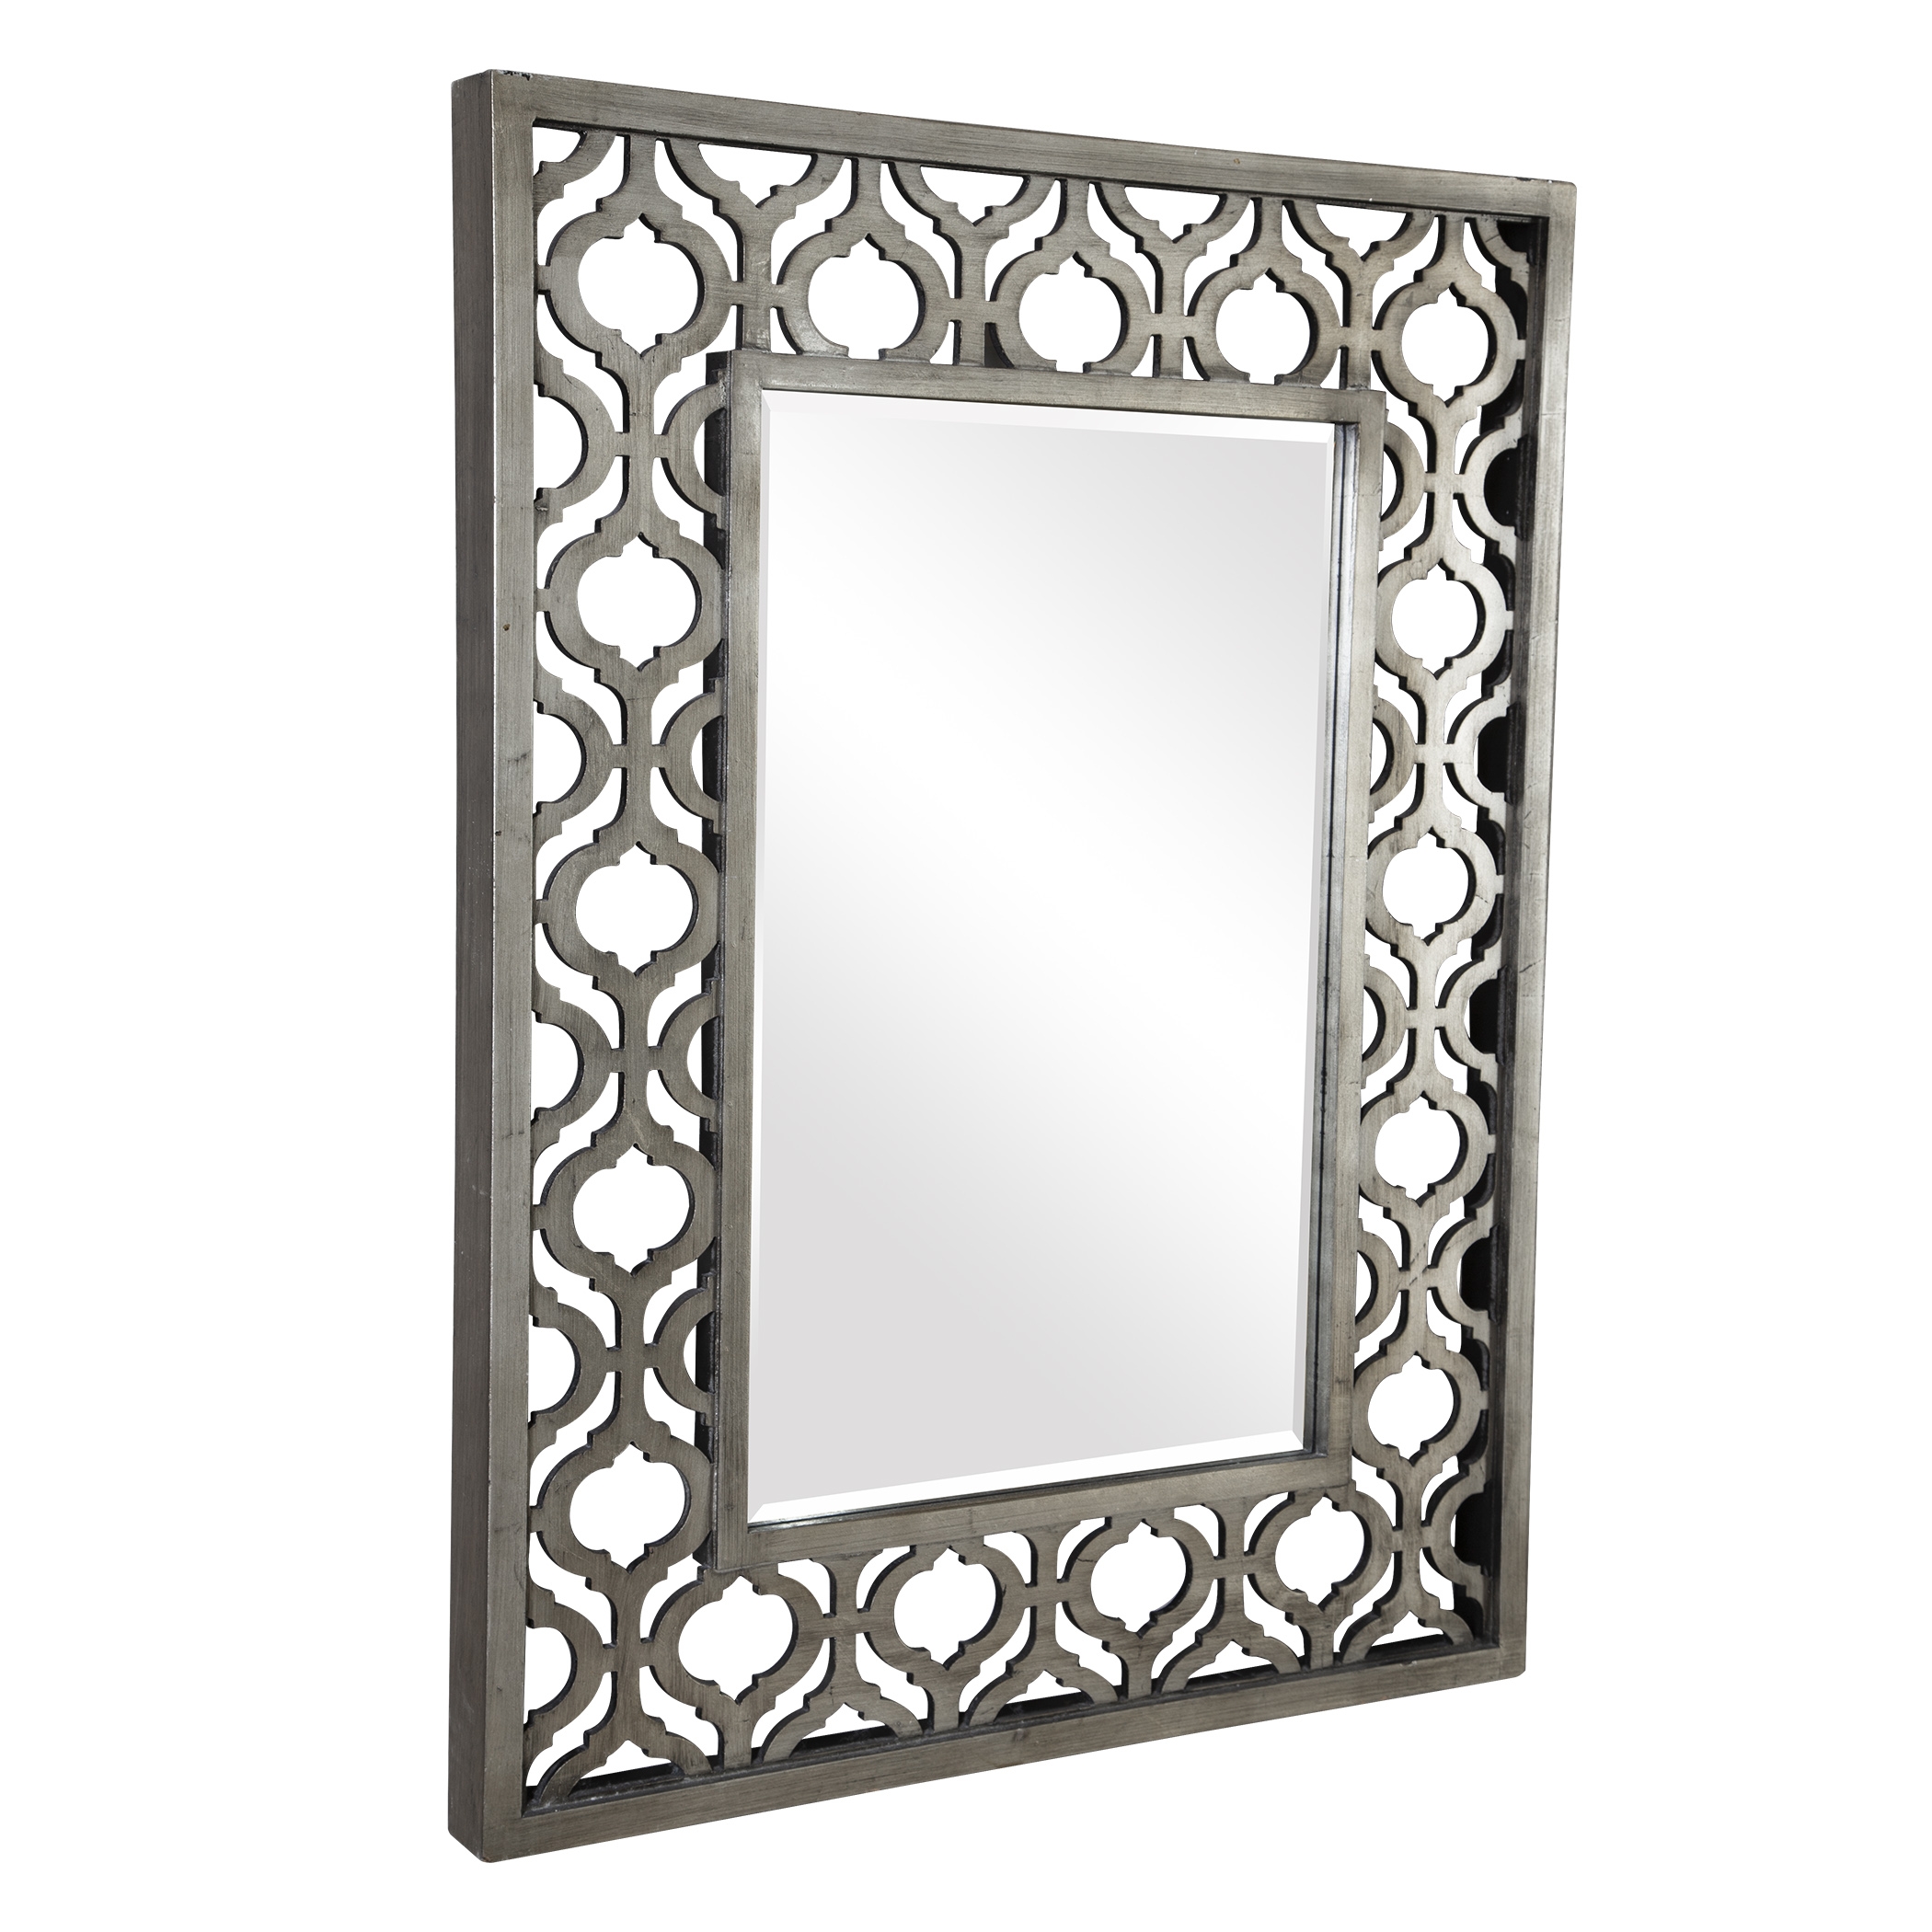 Sorbolo Silver Mirror - Image 2